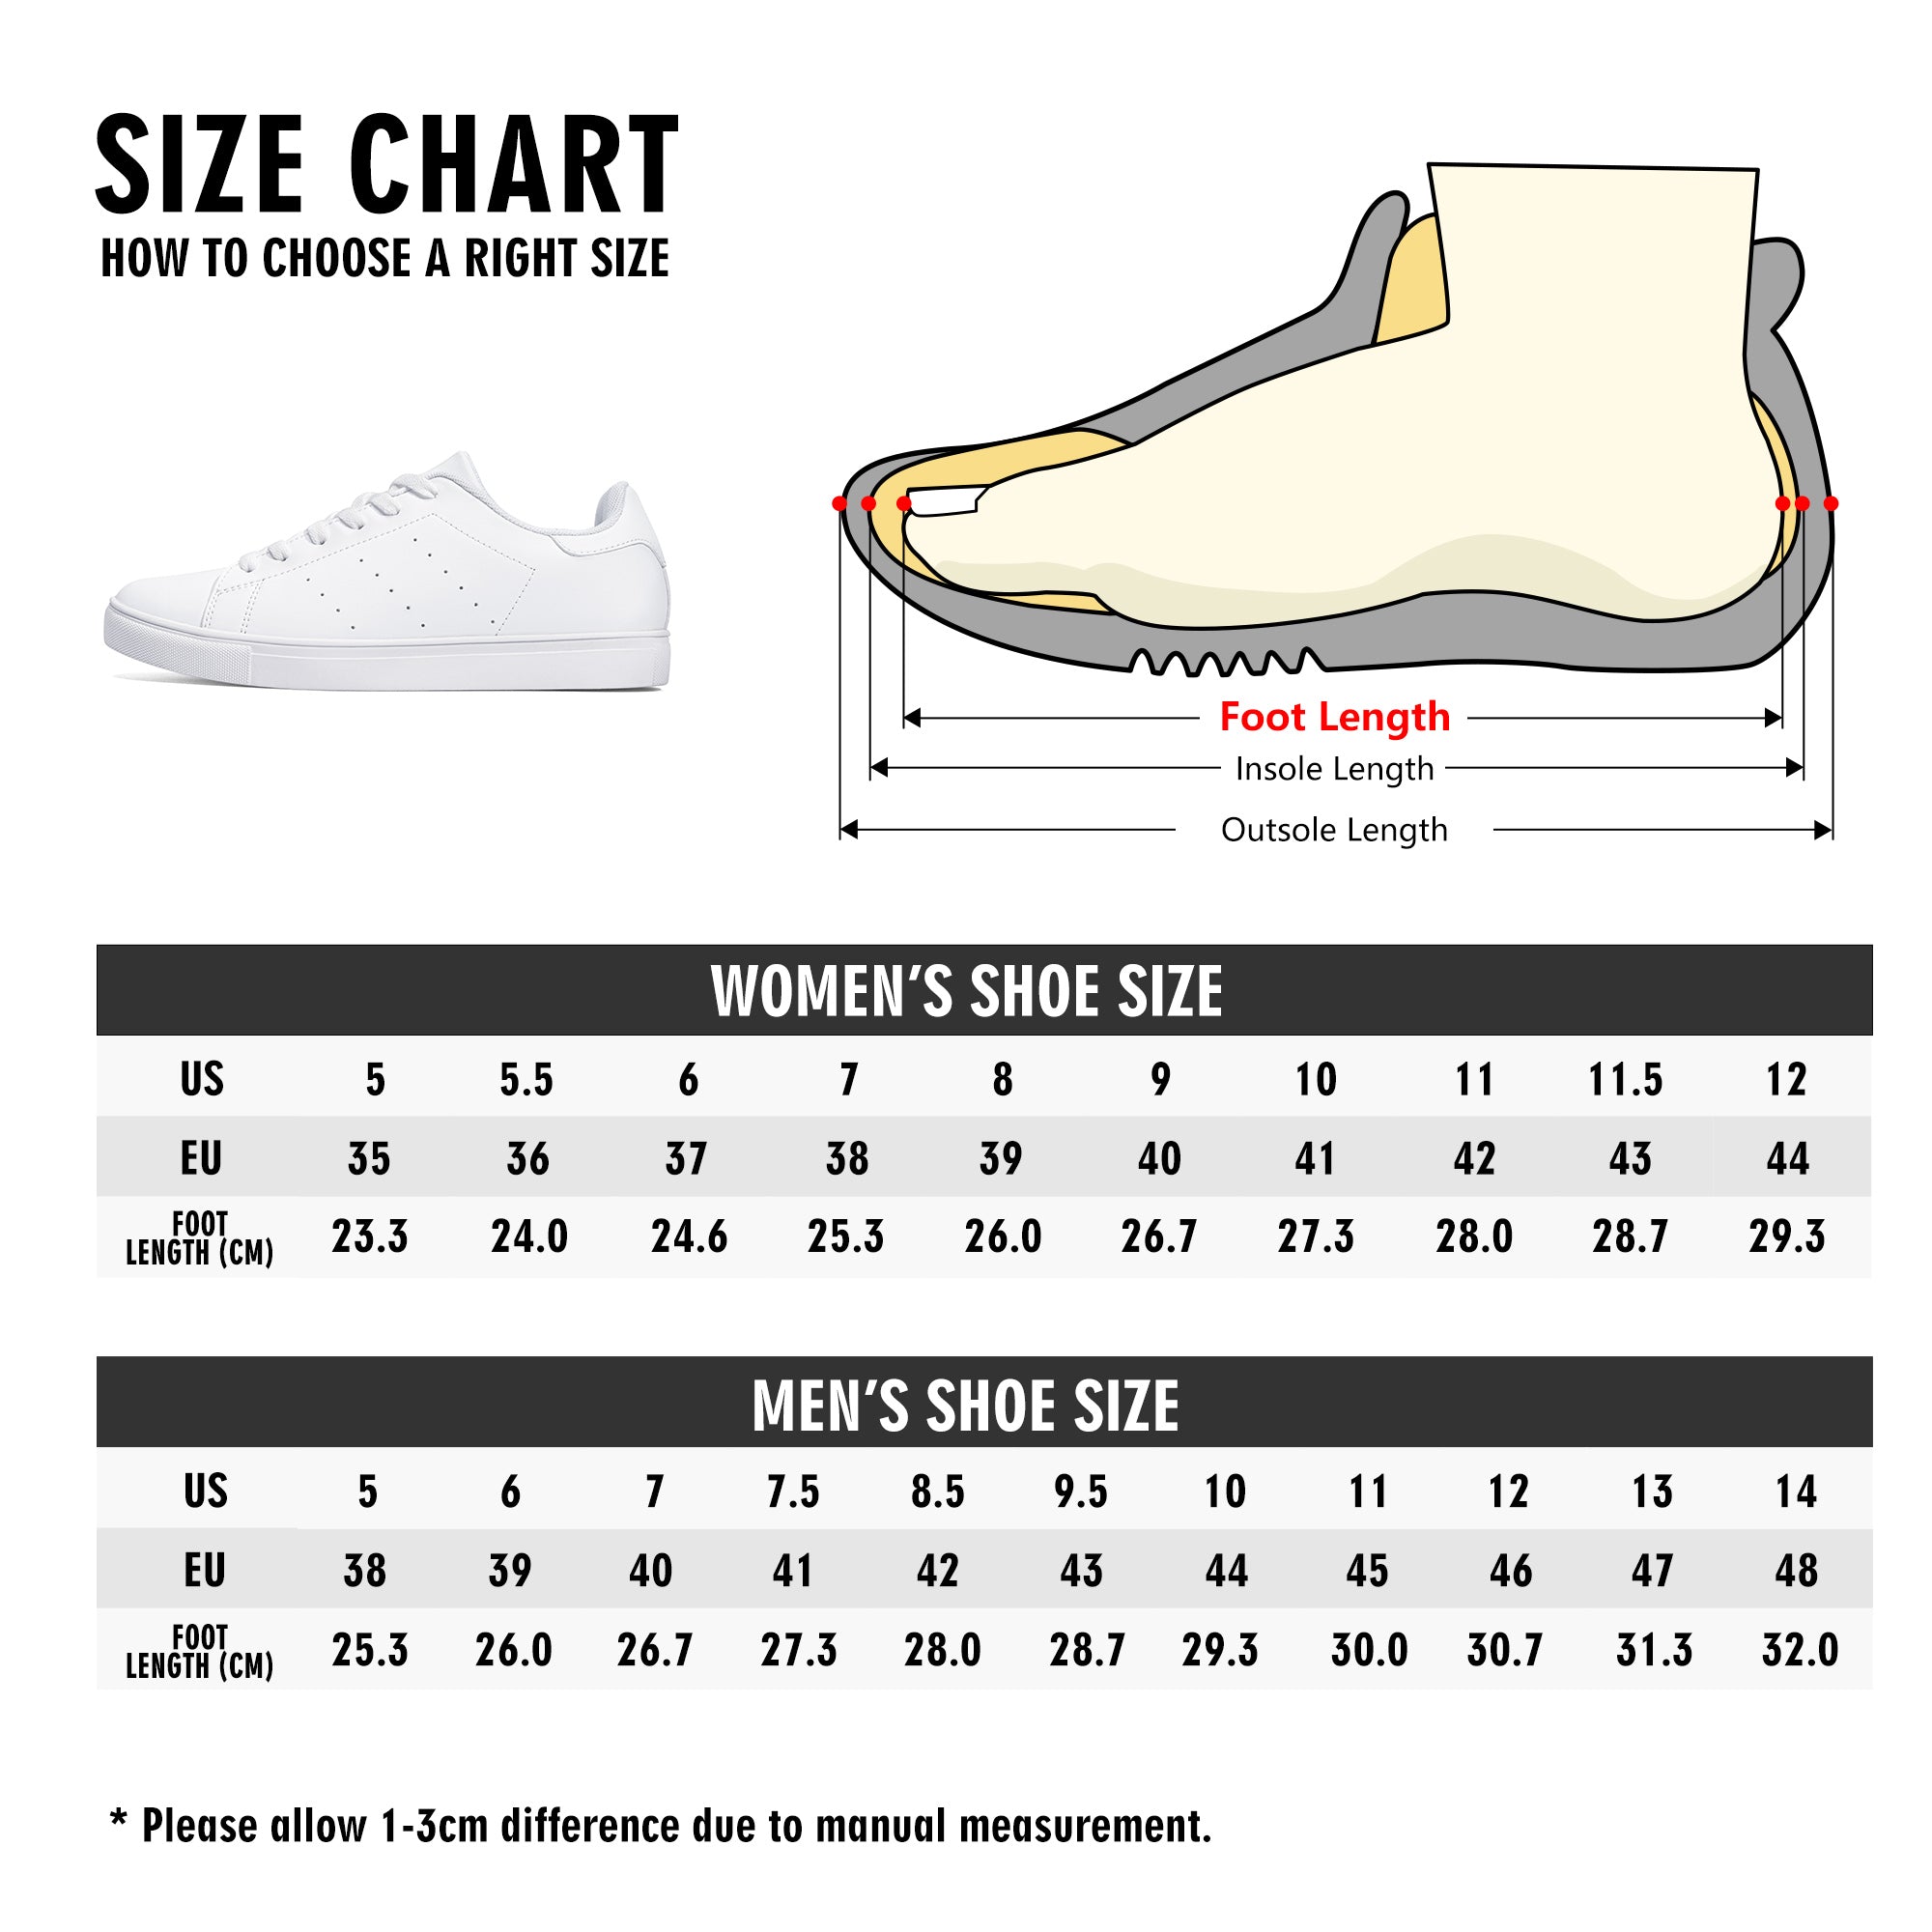 Oscar - Nica Flag  | Business Branded Custom Shoes | Shoe Zero